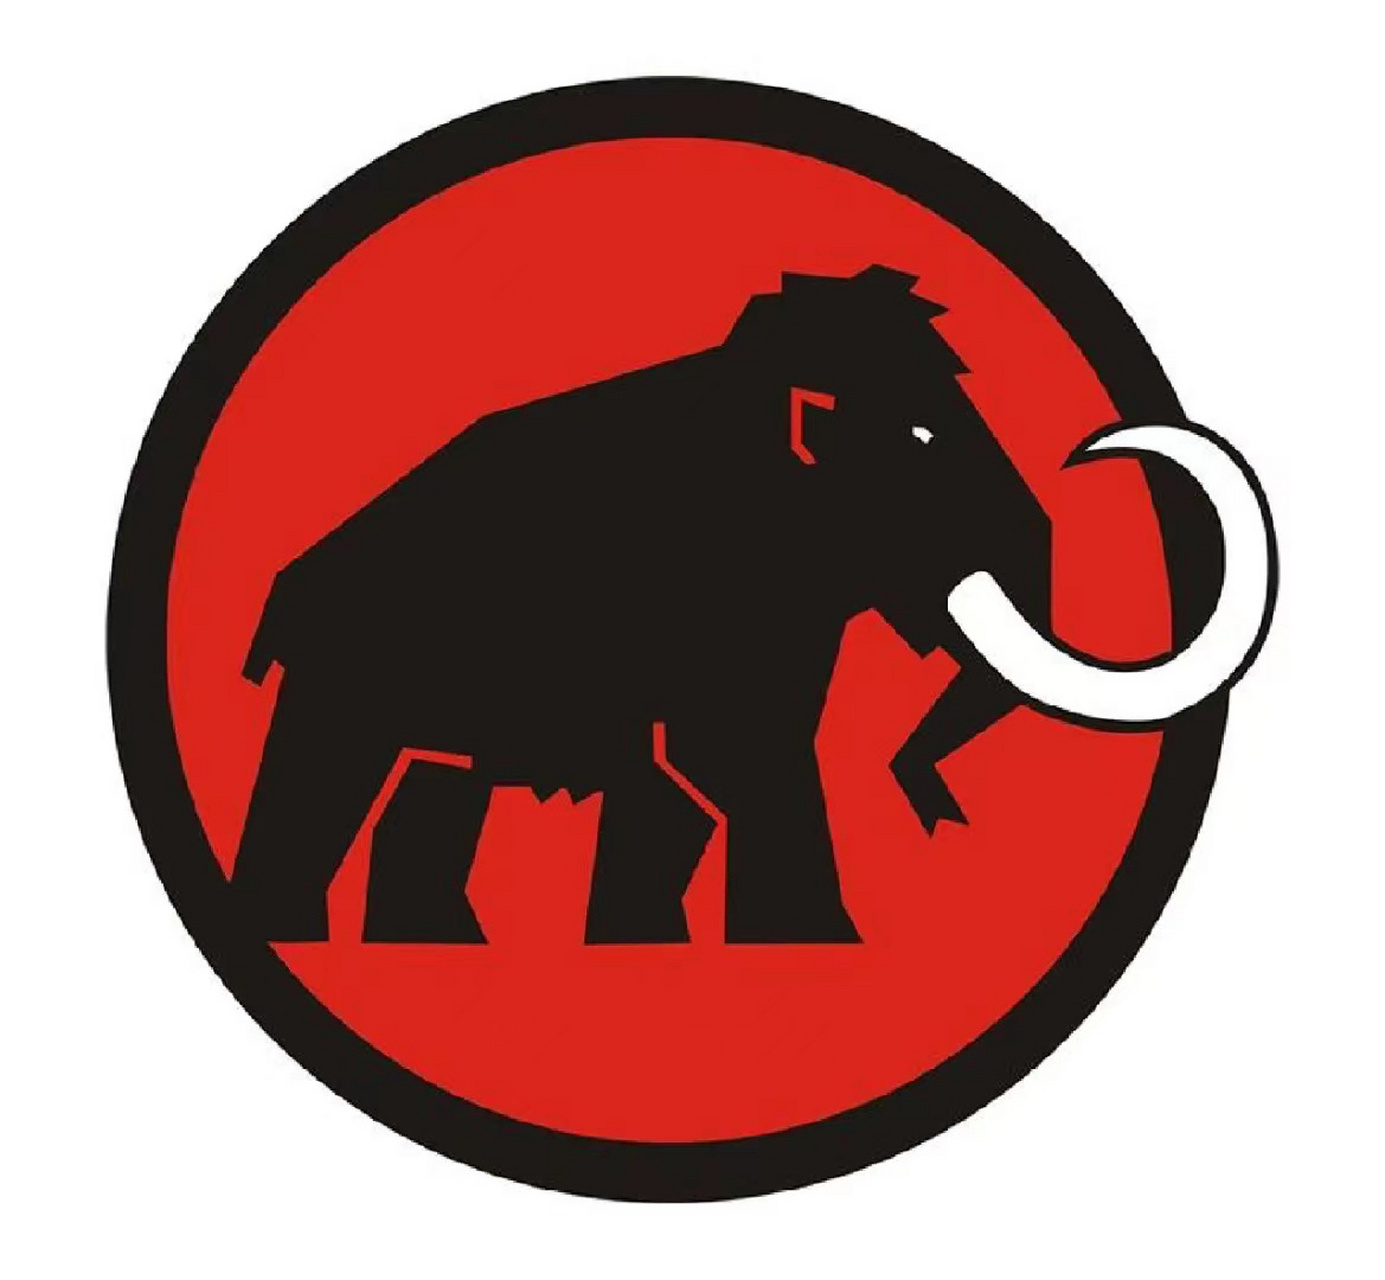 盘点全球十大顶级户外品牌之猛犸象 mammut(猛犸象)诞生于1862年,瑞士